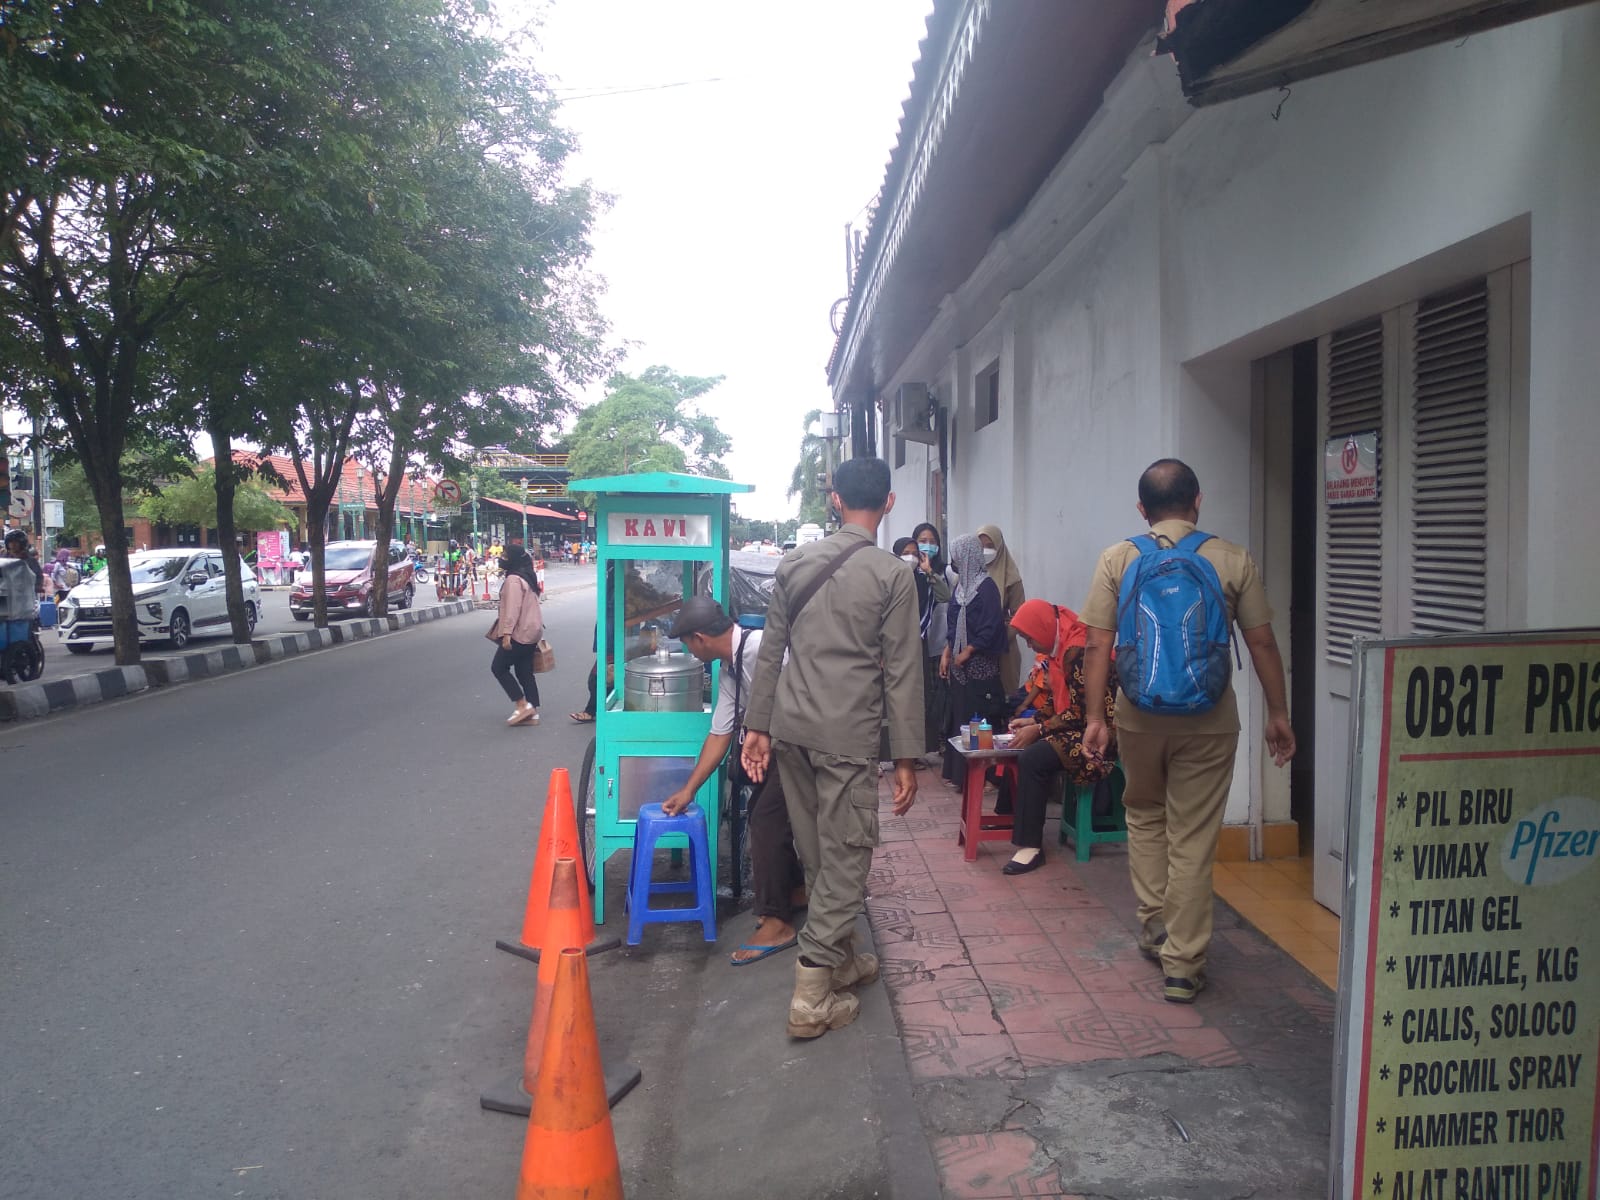 Penertipan PKL & parkir di sepanjanh jl. Pasar kembang 27-6-2022